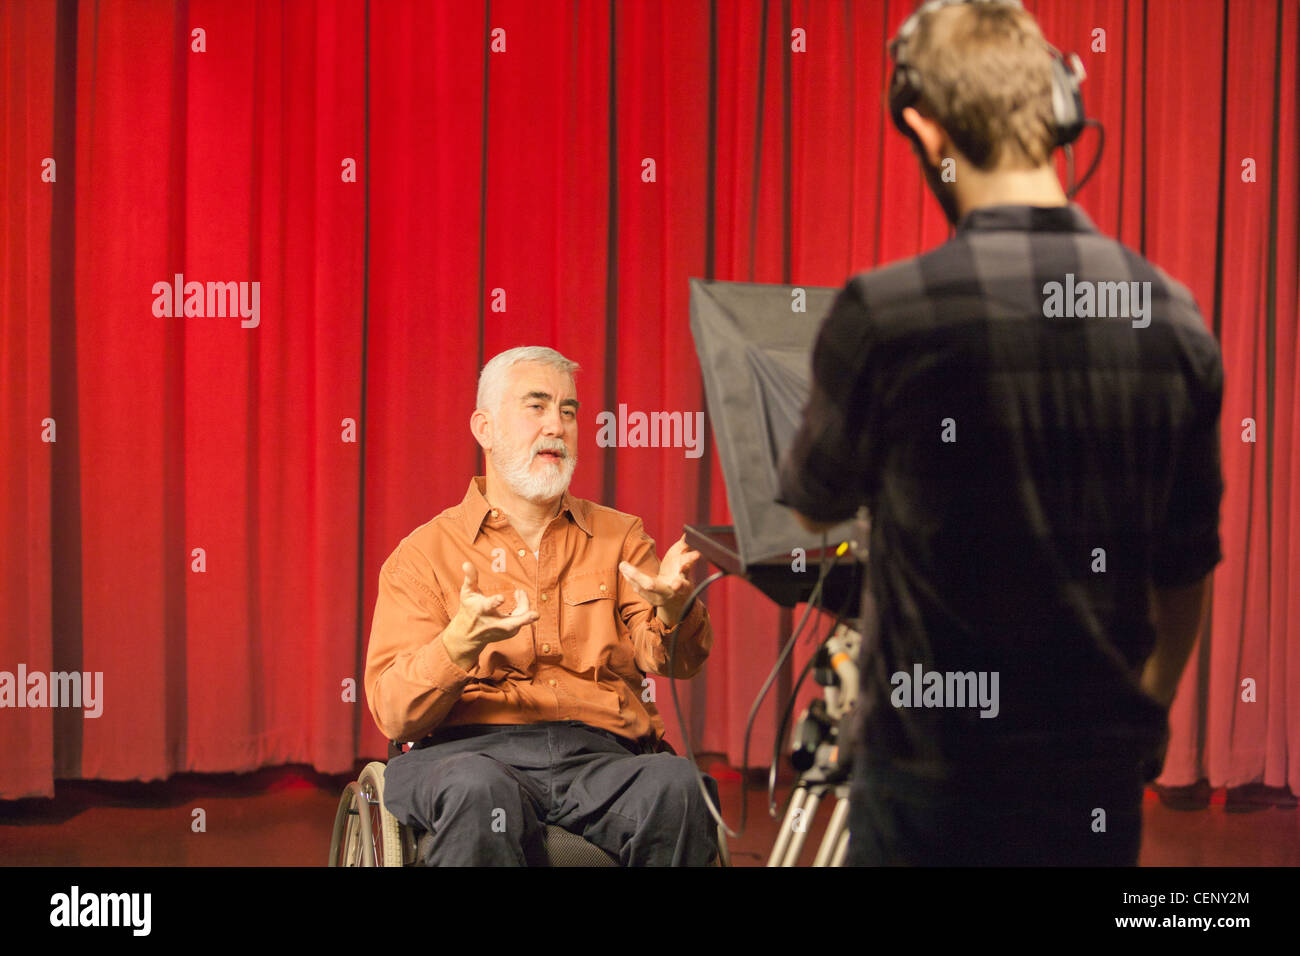 Hombre con distrofia muscular y diabetes hablando sobre una cámara en un estudio de televisión Foto de stock